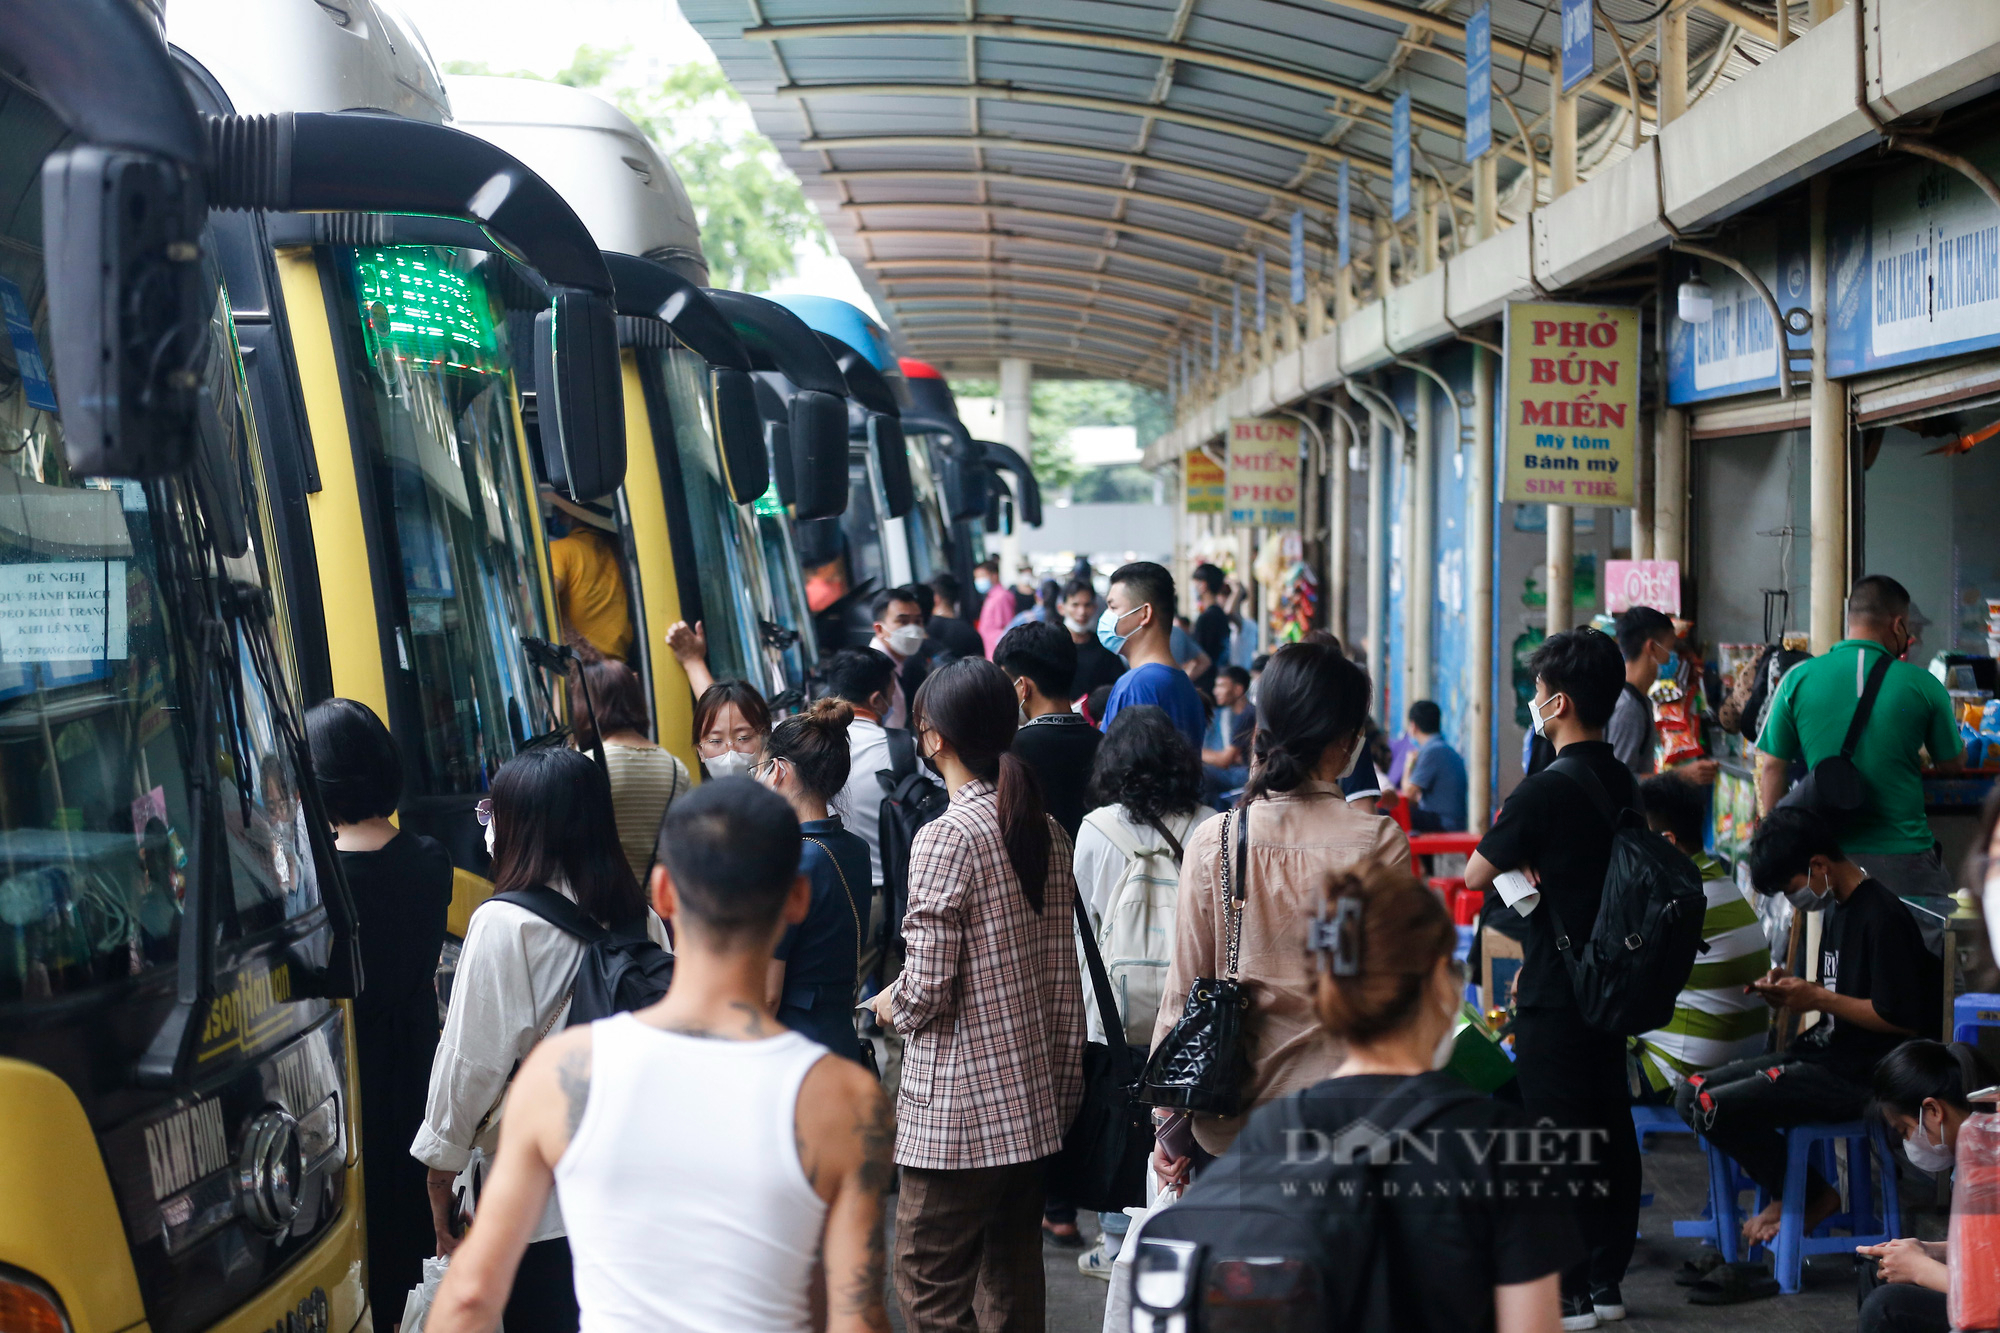 Bến xe tại Hà Nội đông nghẹt, người dân chen nhau lên xe khách về quê nghỉ lễ 30/4 - Ảnh 1.